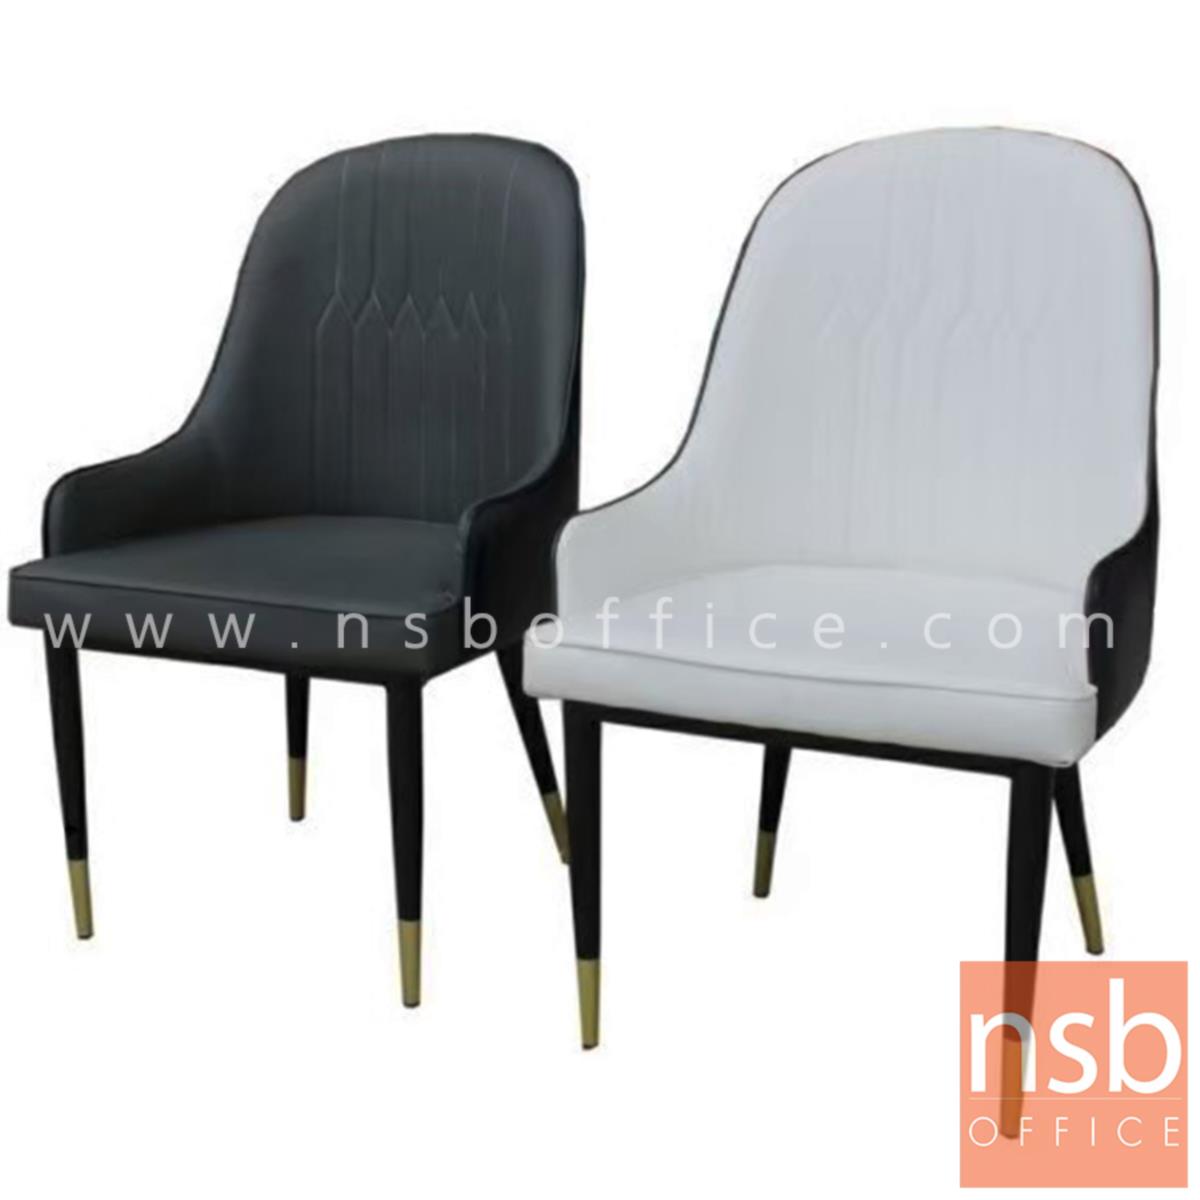 B29A353:เก้าอี้รับรองหุ้มหนังเทียม ด้านนอกหนังดำ รุ่น GH-CHER ขาเหล็ก ผลิตสีดำและสีขาว 